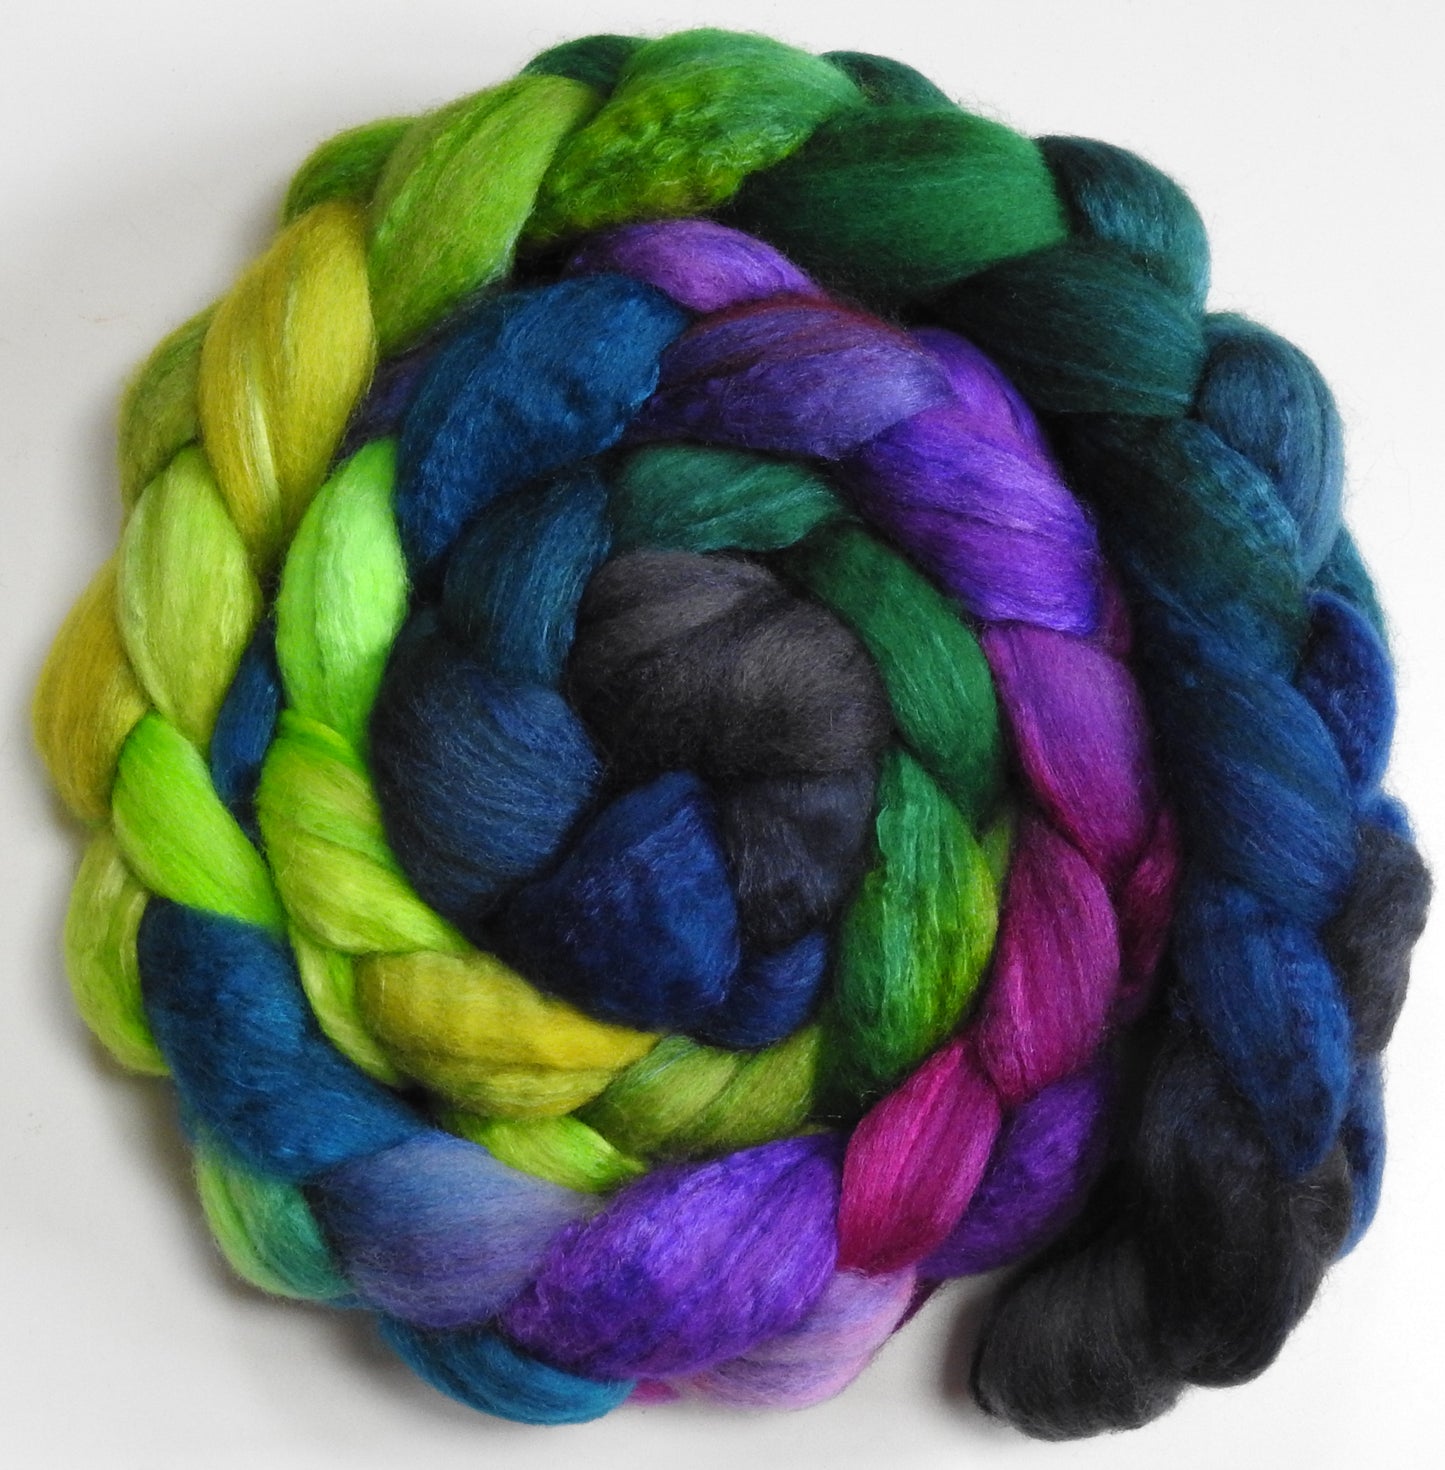 Aurora Borealis (5.8 oz) - Blue-faced Leicester/ Tussah Silk (75/25)